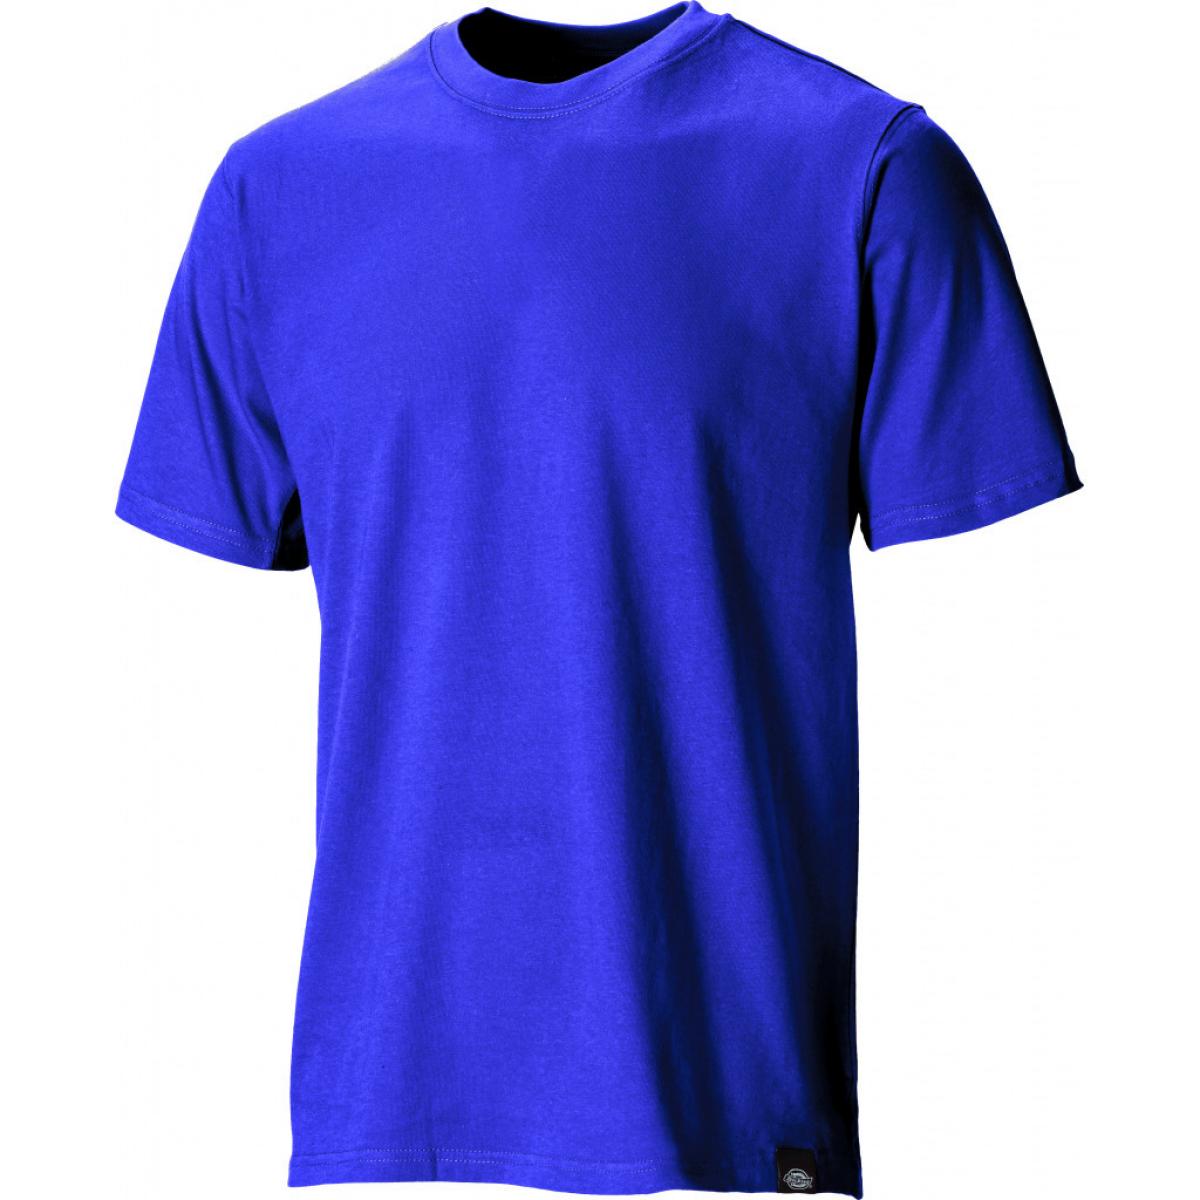 Hersteller: Dickies Herstellernummer: SH34225 Artikelbezeichnung: T-Shirt Farbe: Königsblau